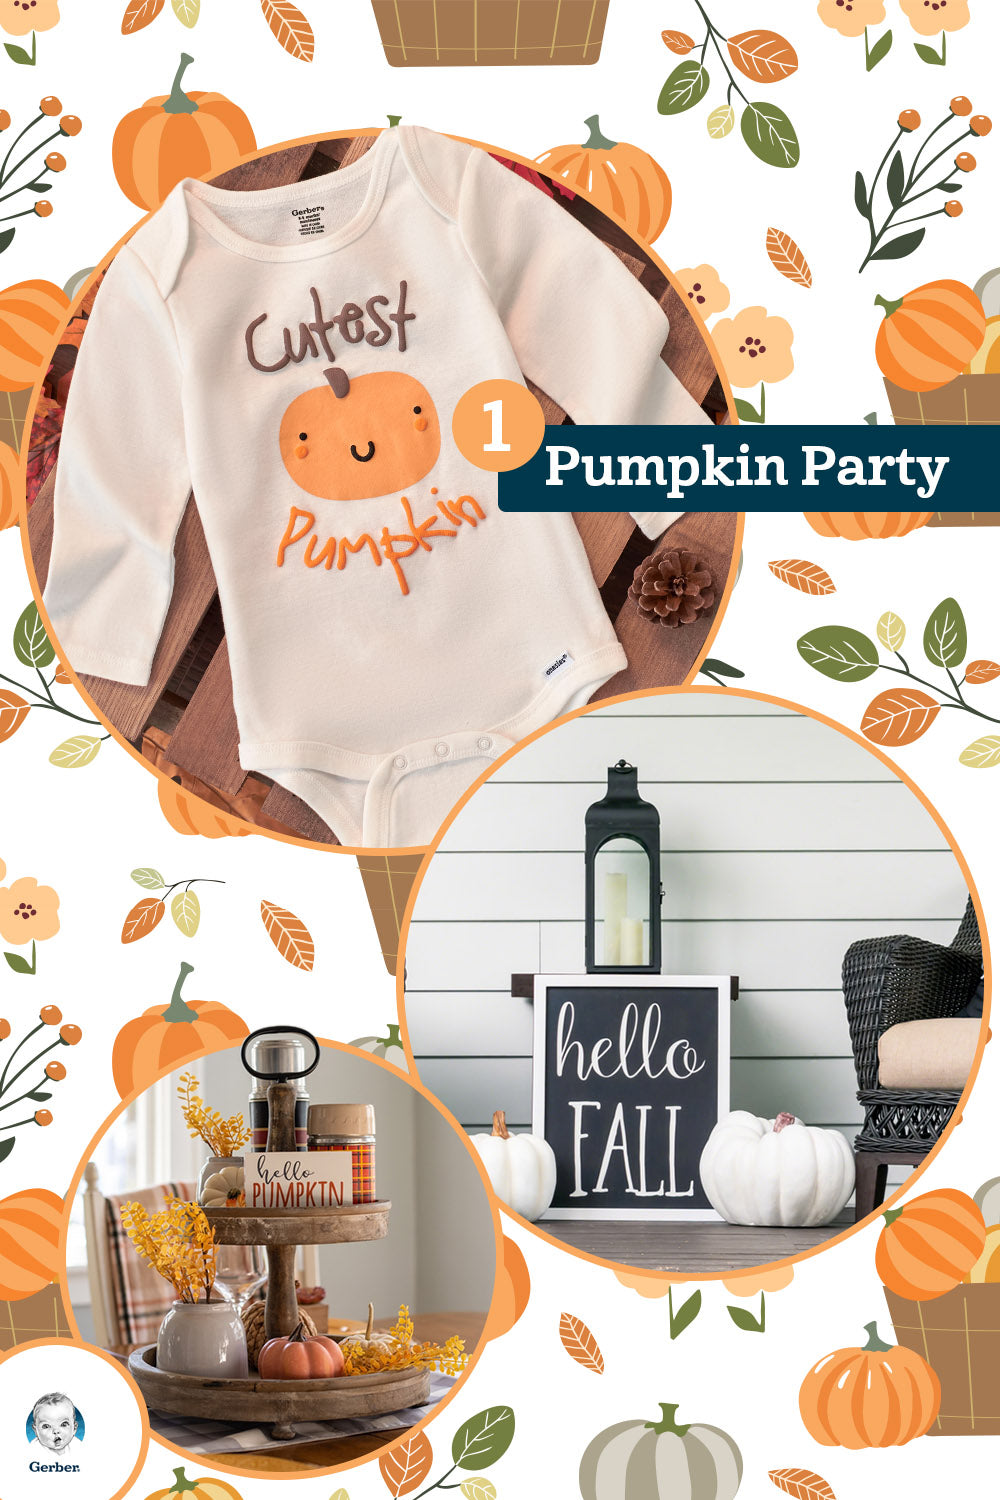 Pumpkin party baby onesies and pumpkin motifs around it